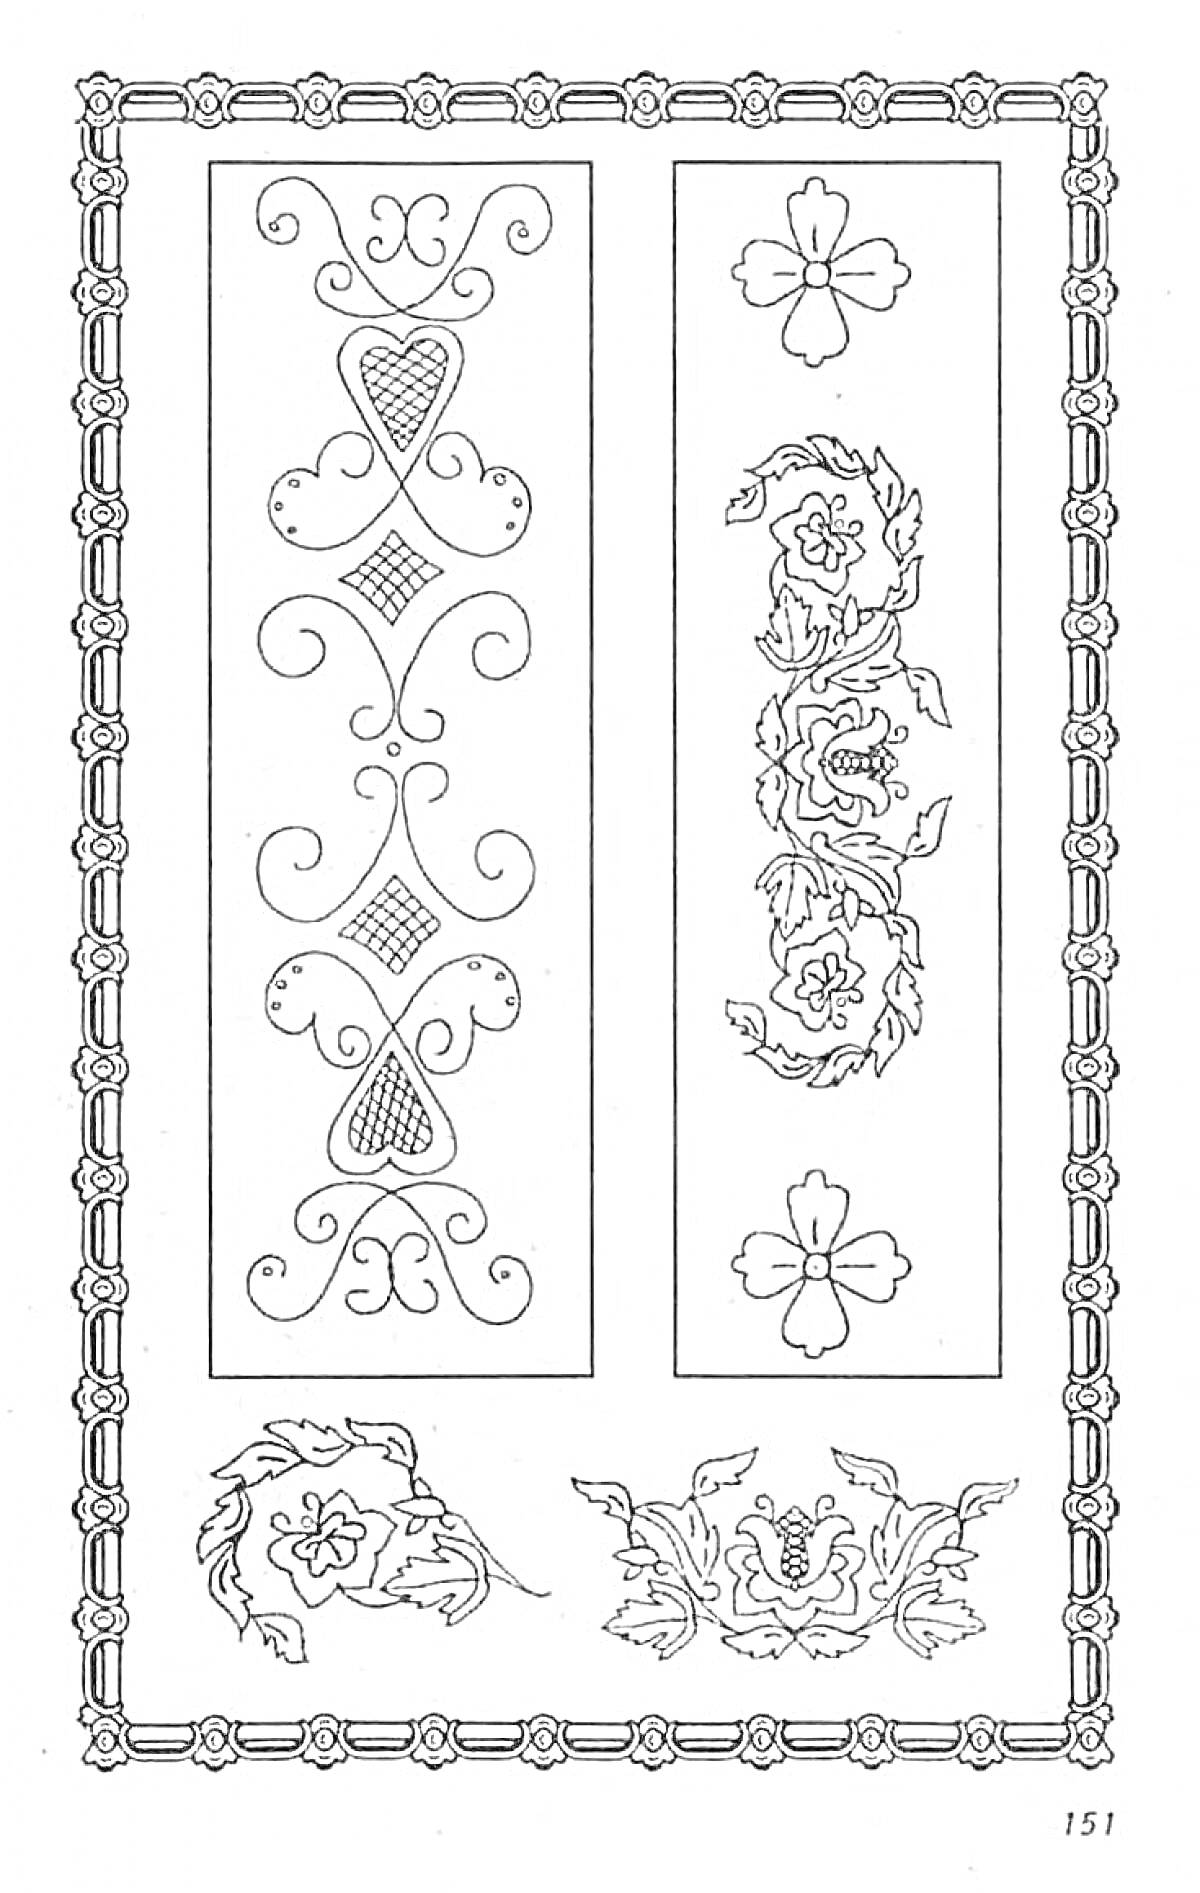 Раскраска Рушник с декоративными элементами, узорами в виде цветов и завитков, центральная часть украшена сложными узорами в виде ромбов и симметричных фигур, углы оформлены цветочными мотивами